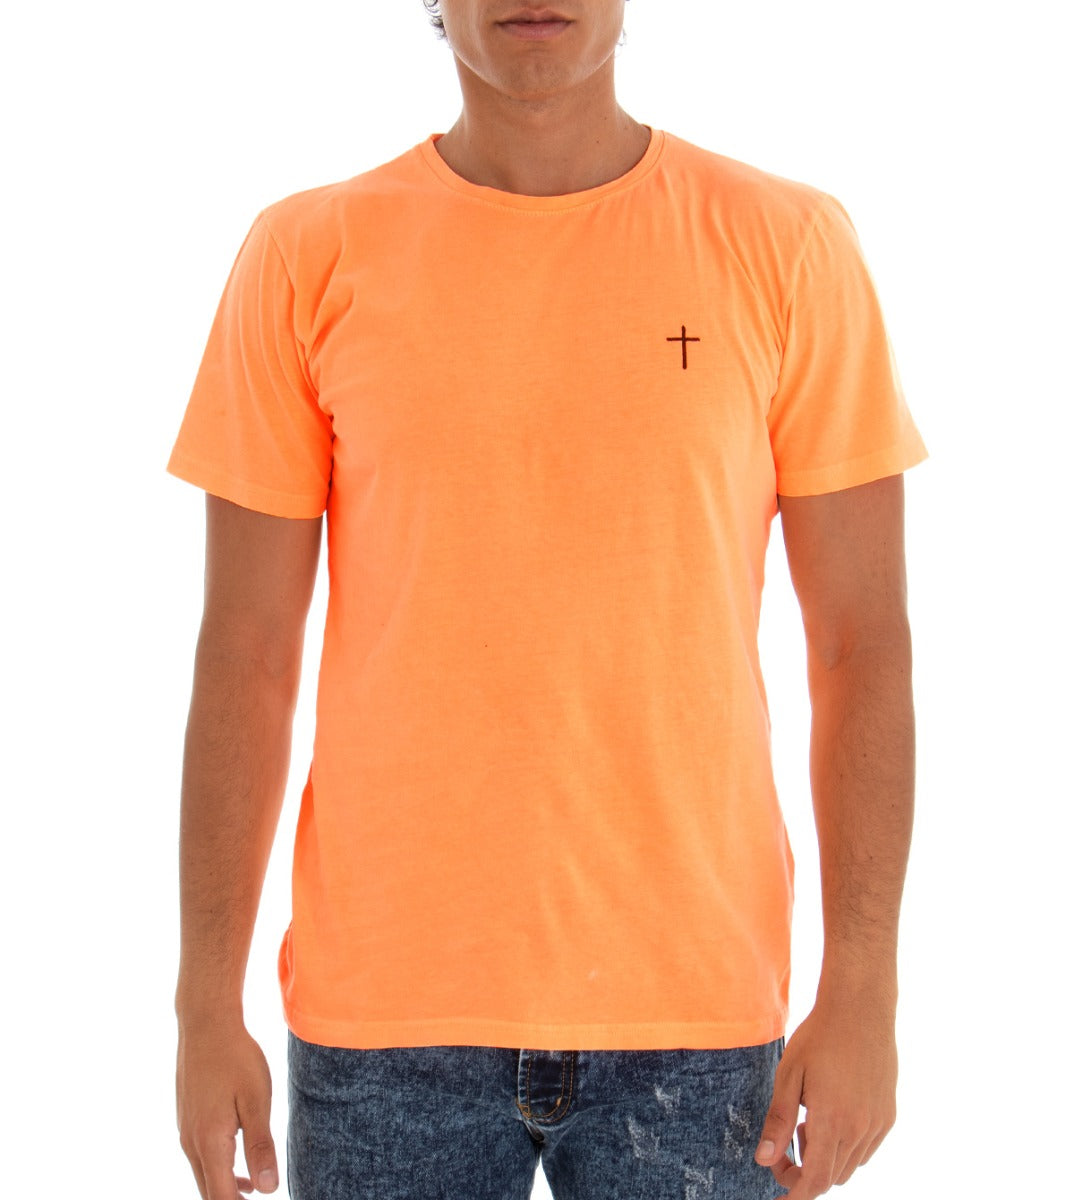 T-shirt Uomo Maglia Maniche Corte Cotone Tinta Unita Arancio Fluo Girocollo GIOSAL